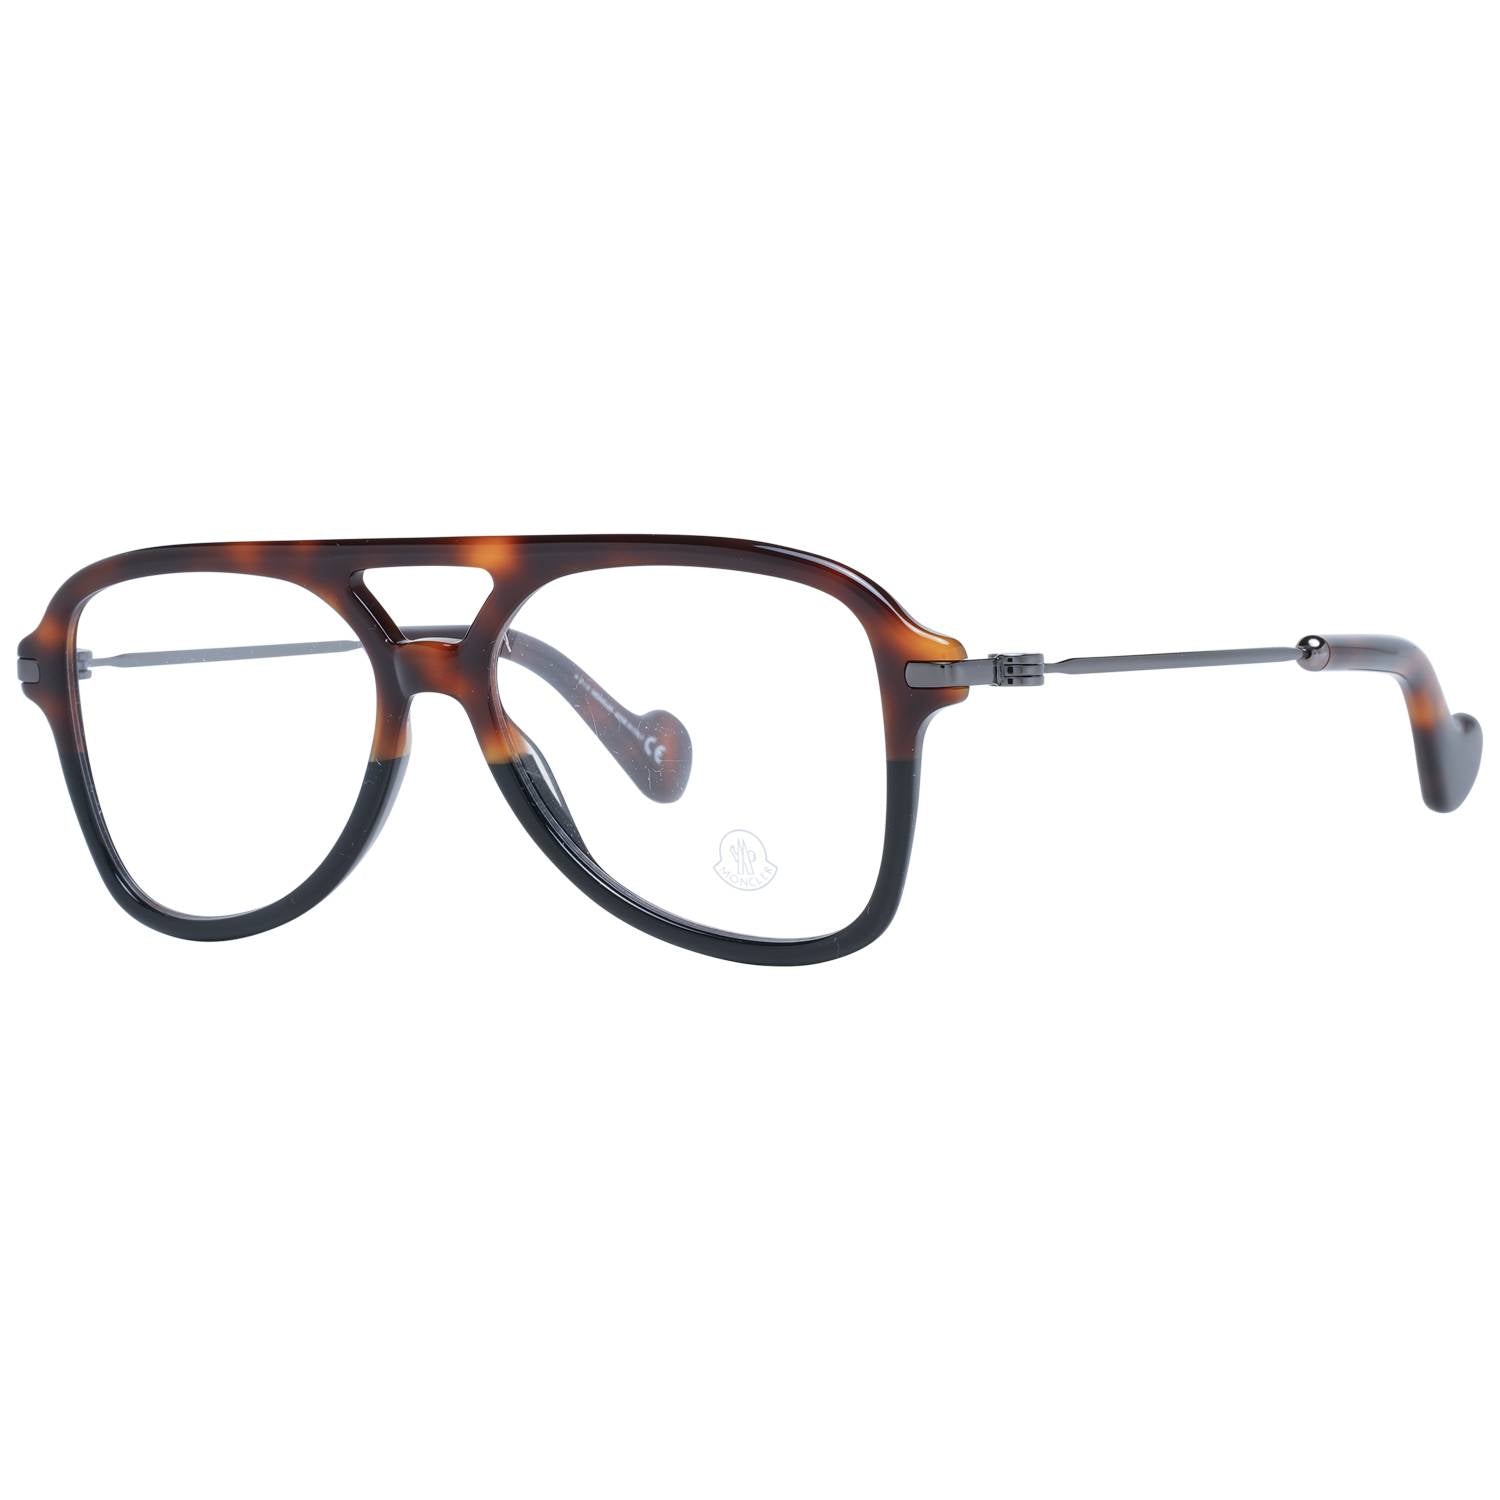 Moncler Eyeglasses Moncler Glasses Frames ML5081 056 56mm Eyeglasses Eyewear UK USA Australia 